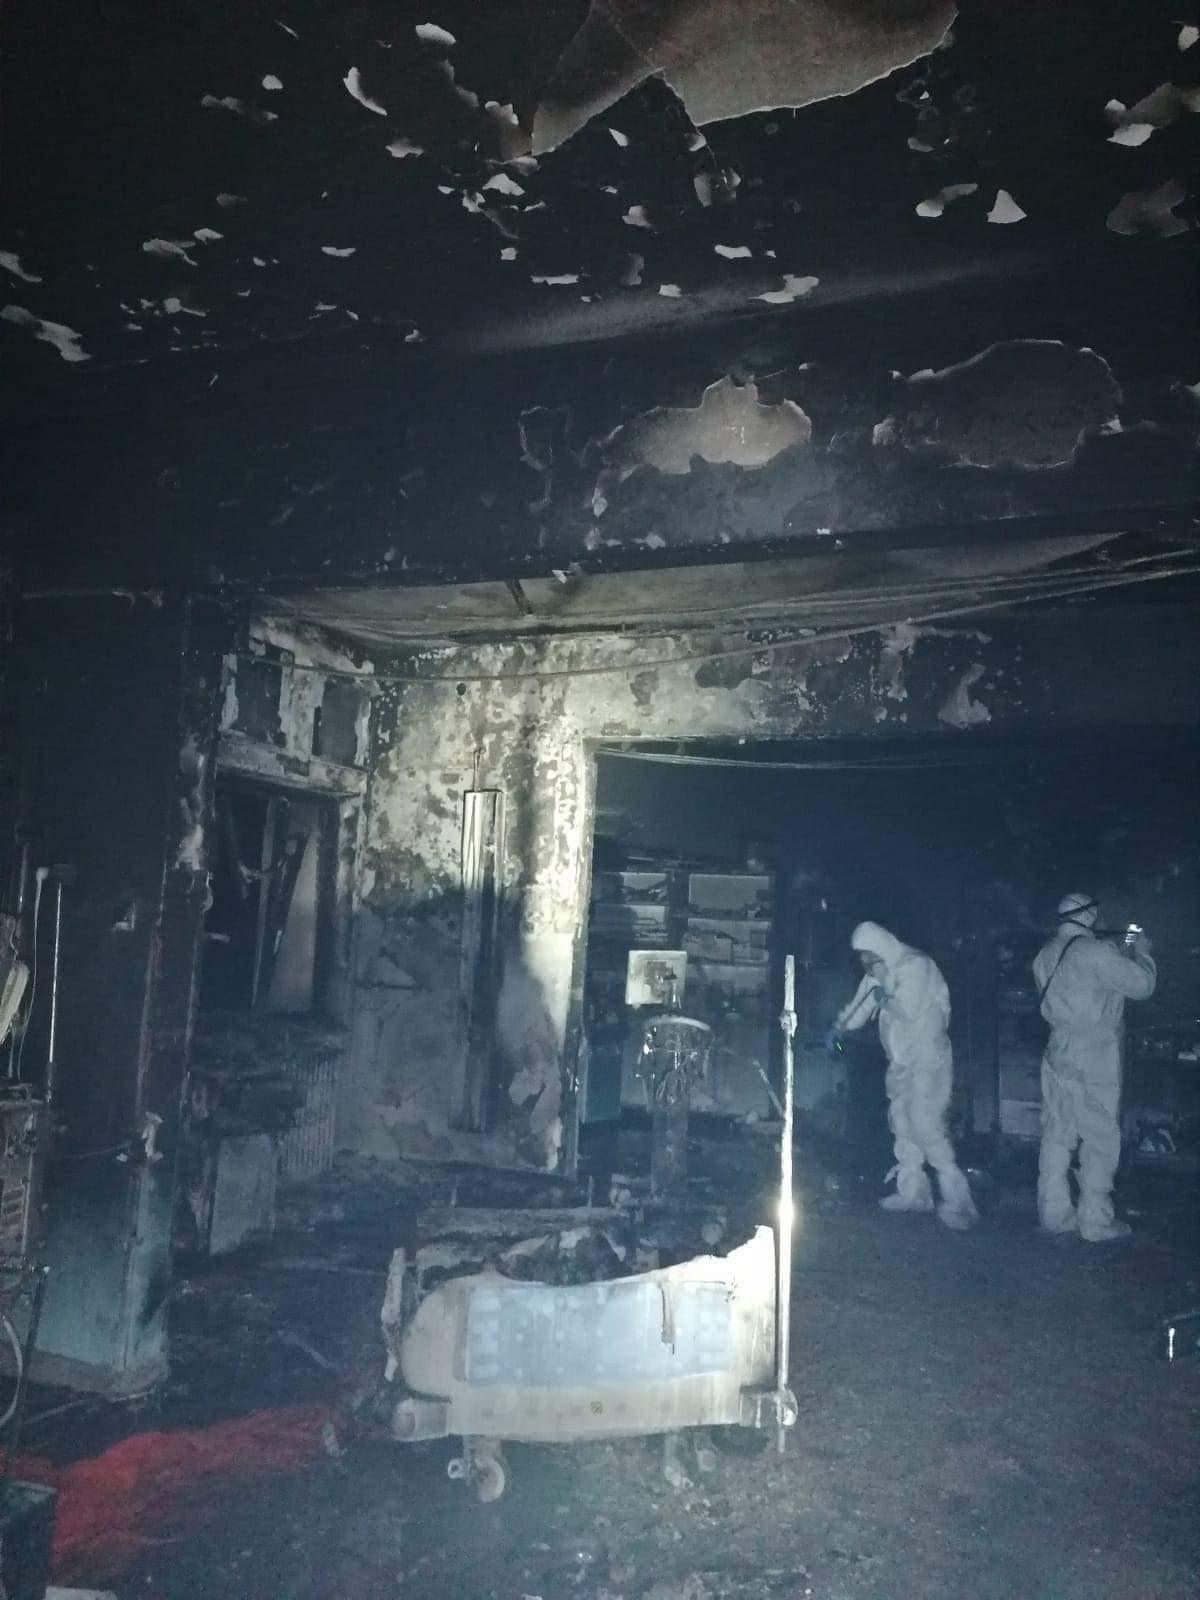 Incendiu violent la Spitalul Judeţean Piatra Neamţ. Zece persoane au murit, iar medicul de gardă este în stare critică - Imaginea 2